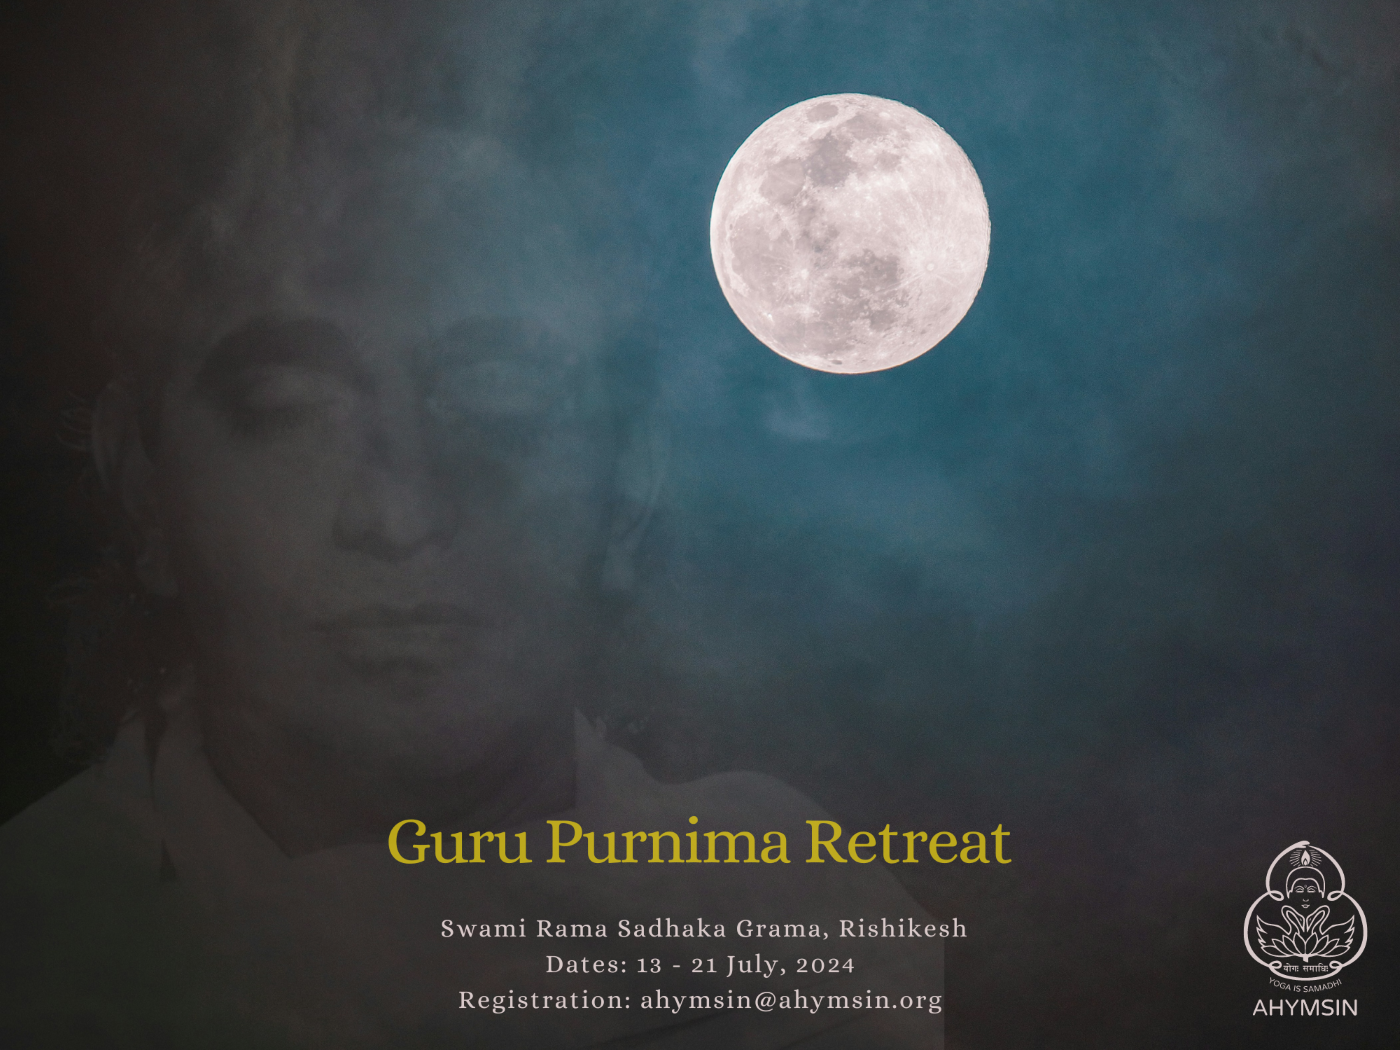 Guru Purnima Retreat at SRSG